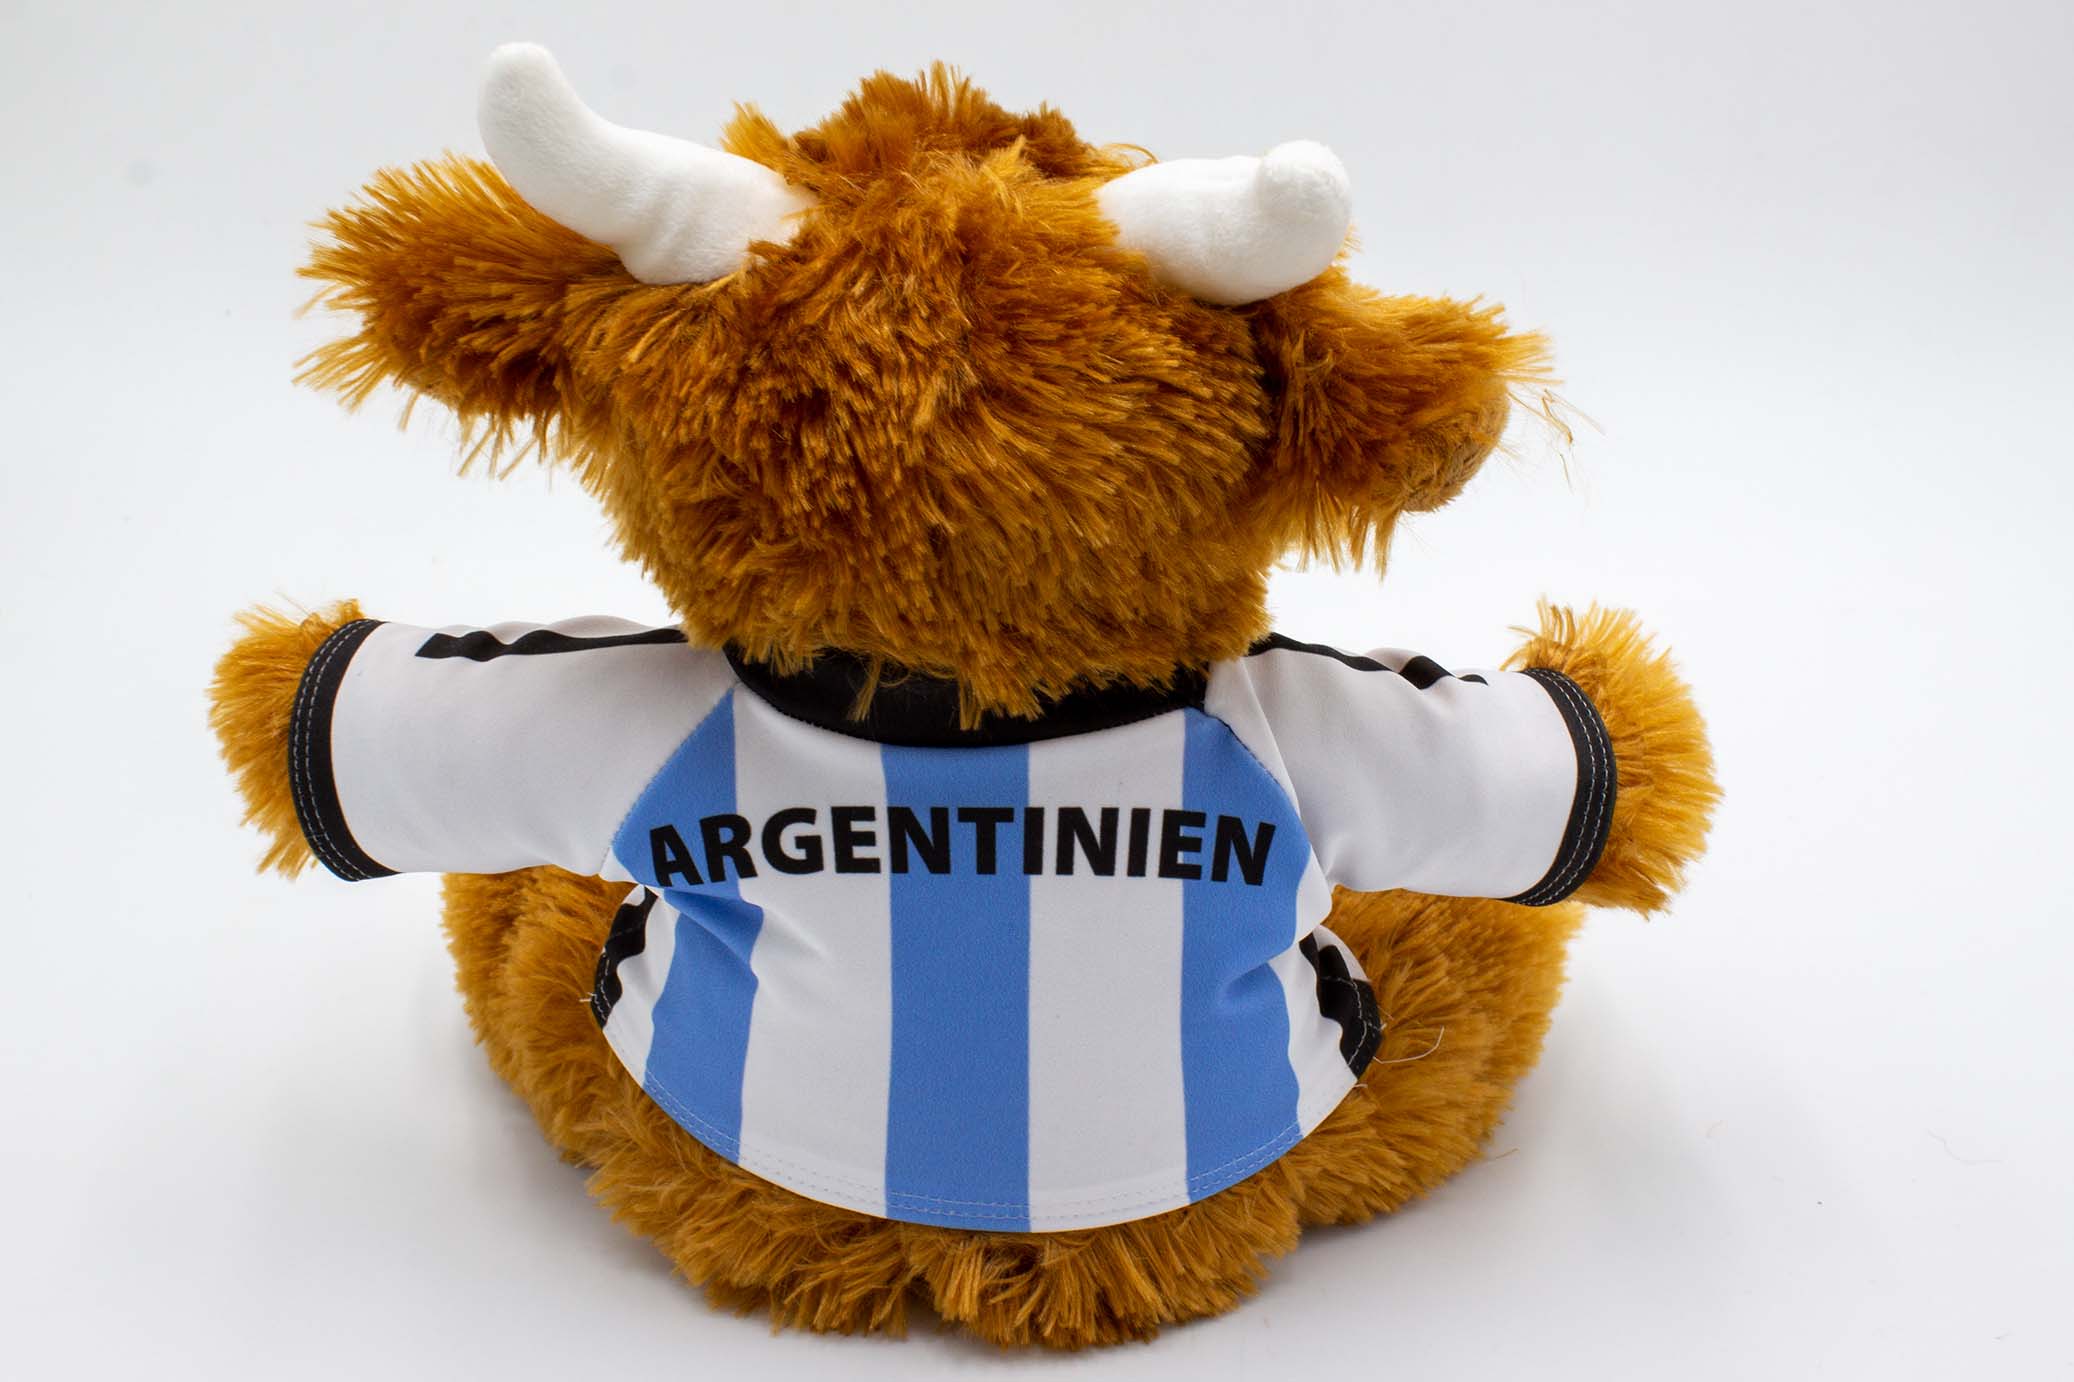 Argentinien-1GKLgBL0ebtb94